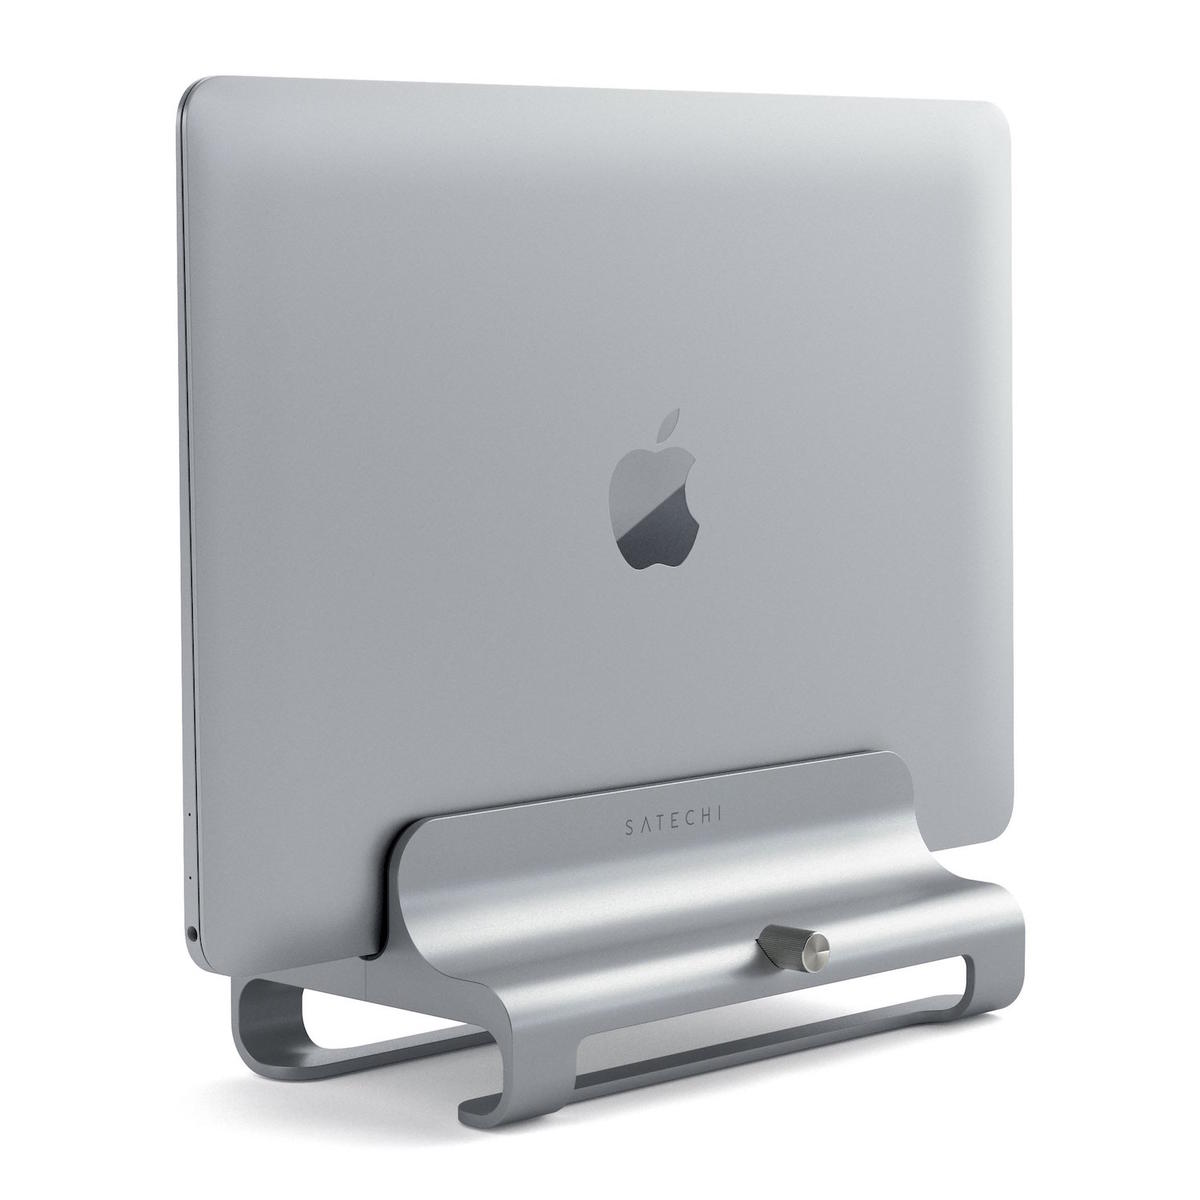 Veramz Soporte de Ordenador portátil para MacBook Color Negro Soporte ergonómico con ángulo para MacBook y Otros portátiles de 11-17 Pulgadas 